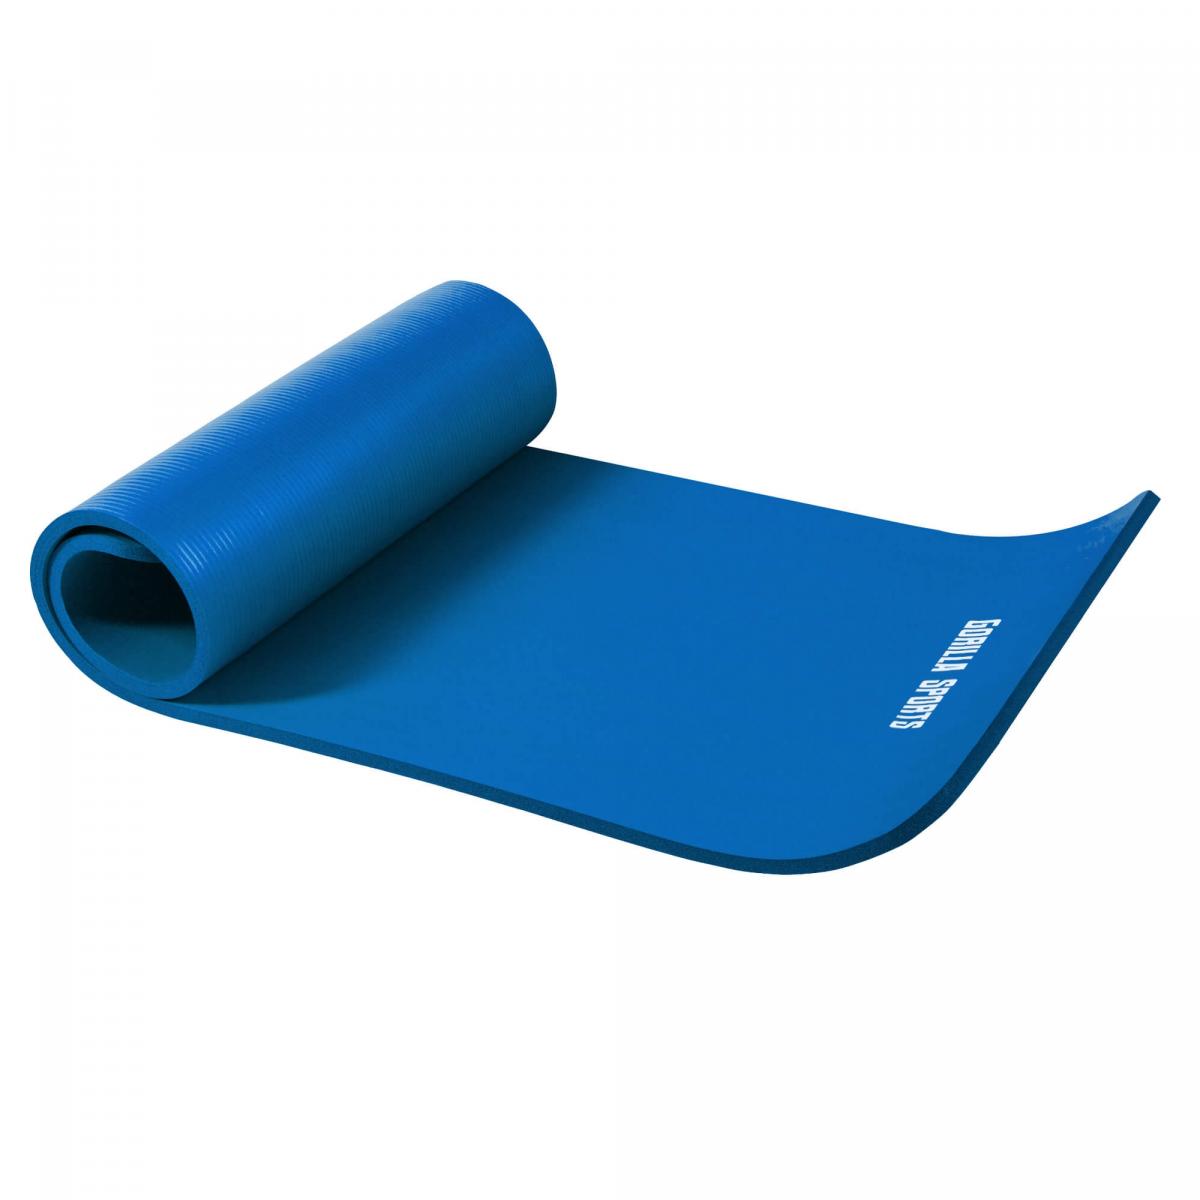 Petit tapis de yoga en mousse - 190 x 60 x 1,5 cm (Yoga - Pilates - sport Ã domicile) Bleu Royal